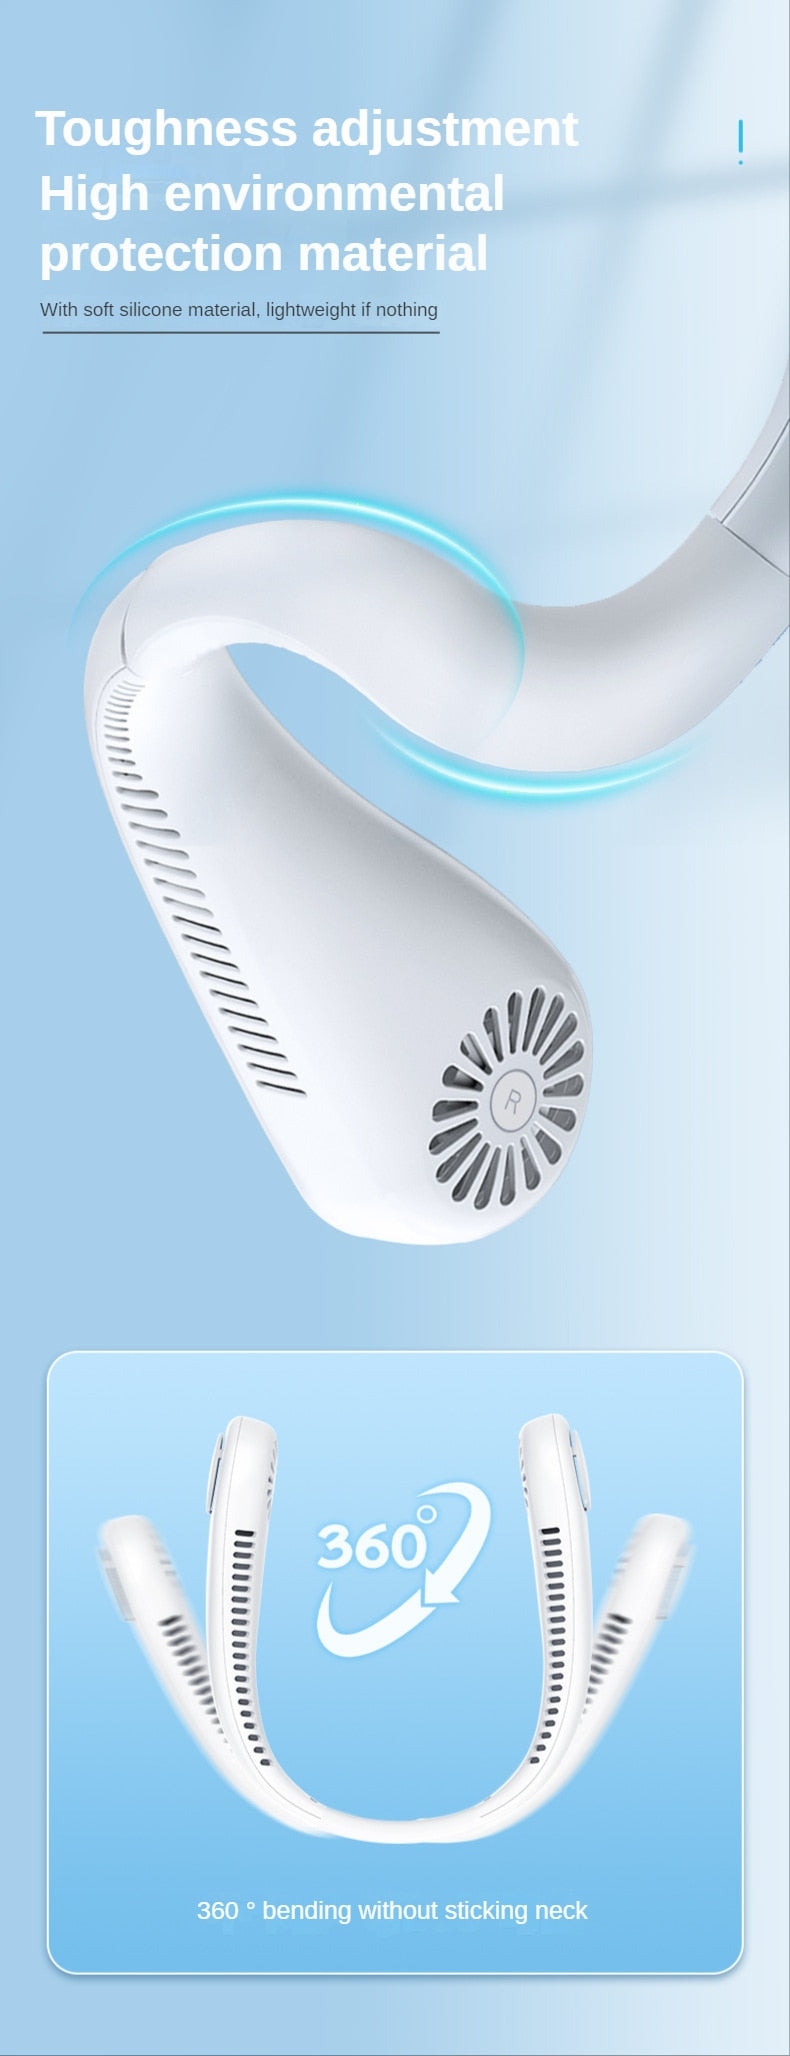 Mini aire acondicionado – Ventilador enfriador de cuello colgante portátil silencioso de 1200 mAh sin aspas para deportes